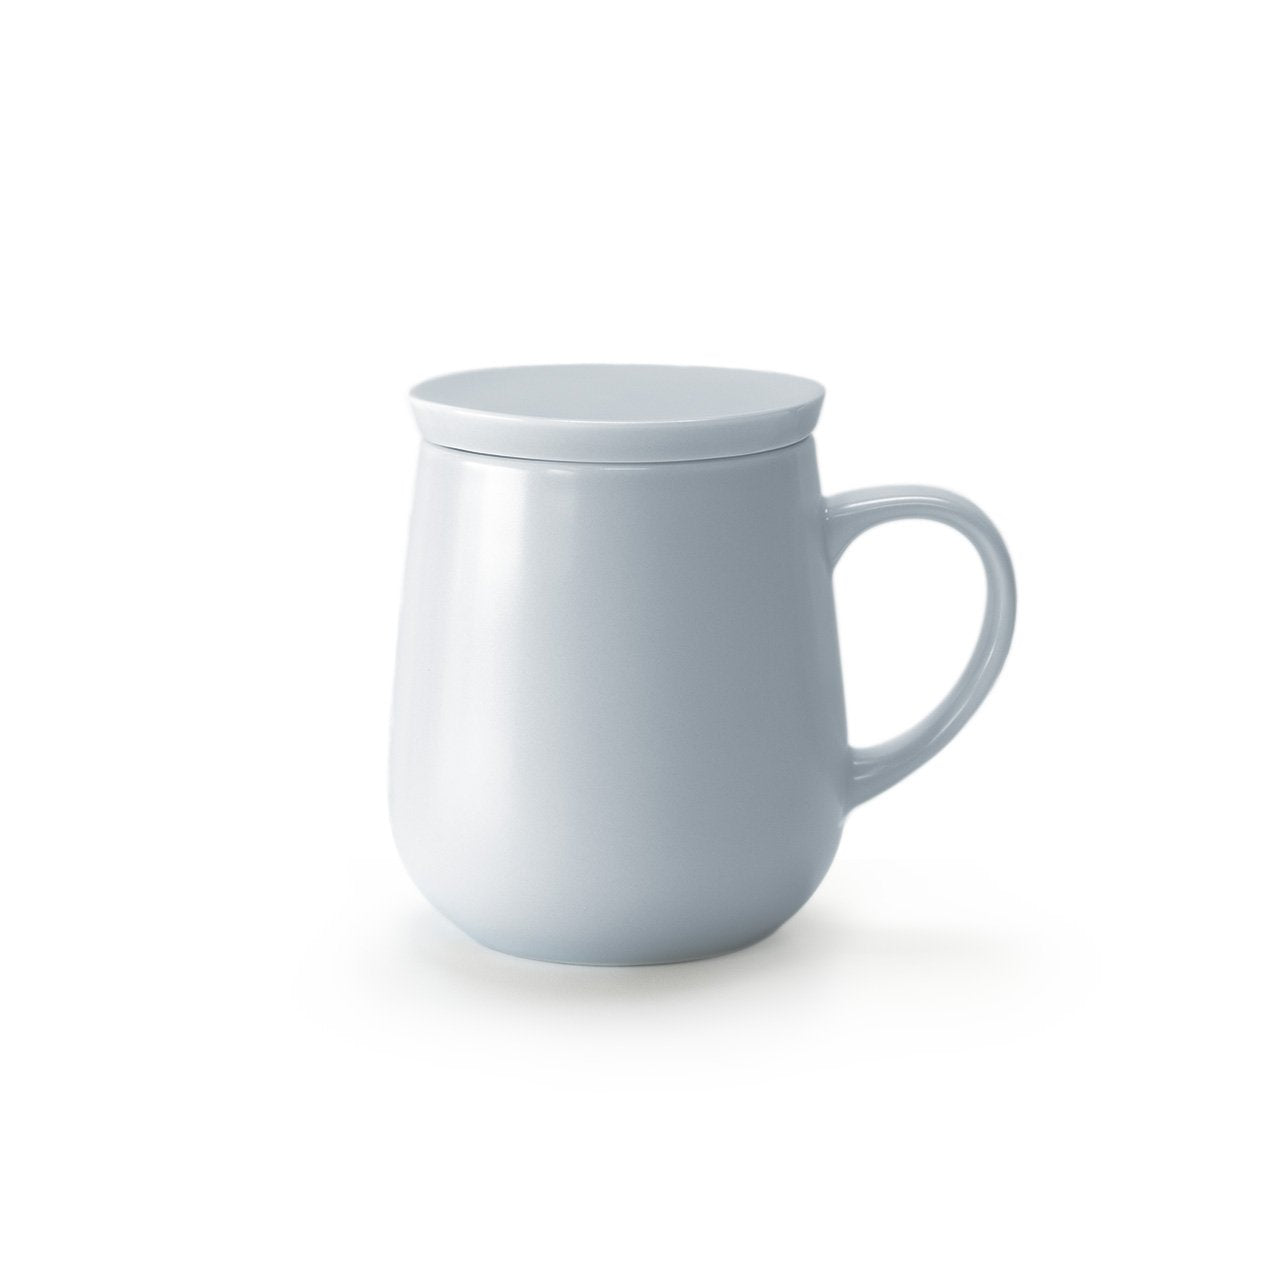 Small light gray mug with lid